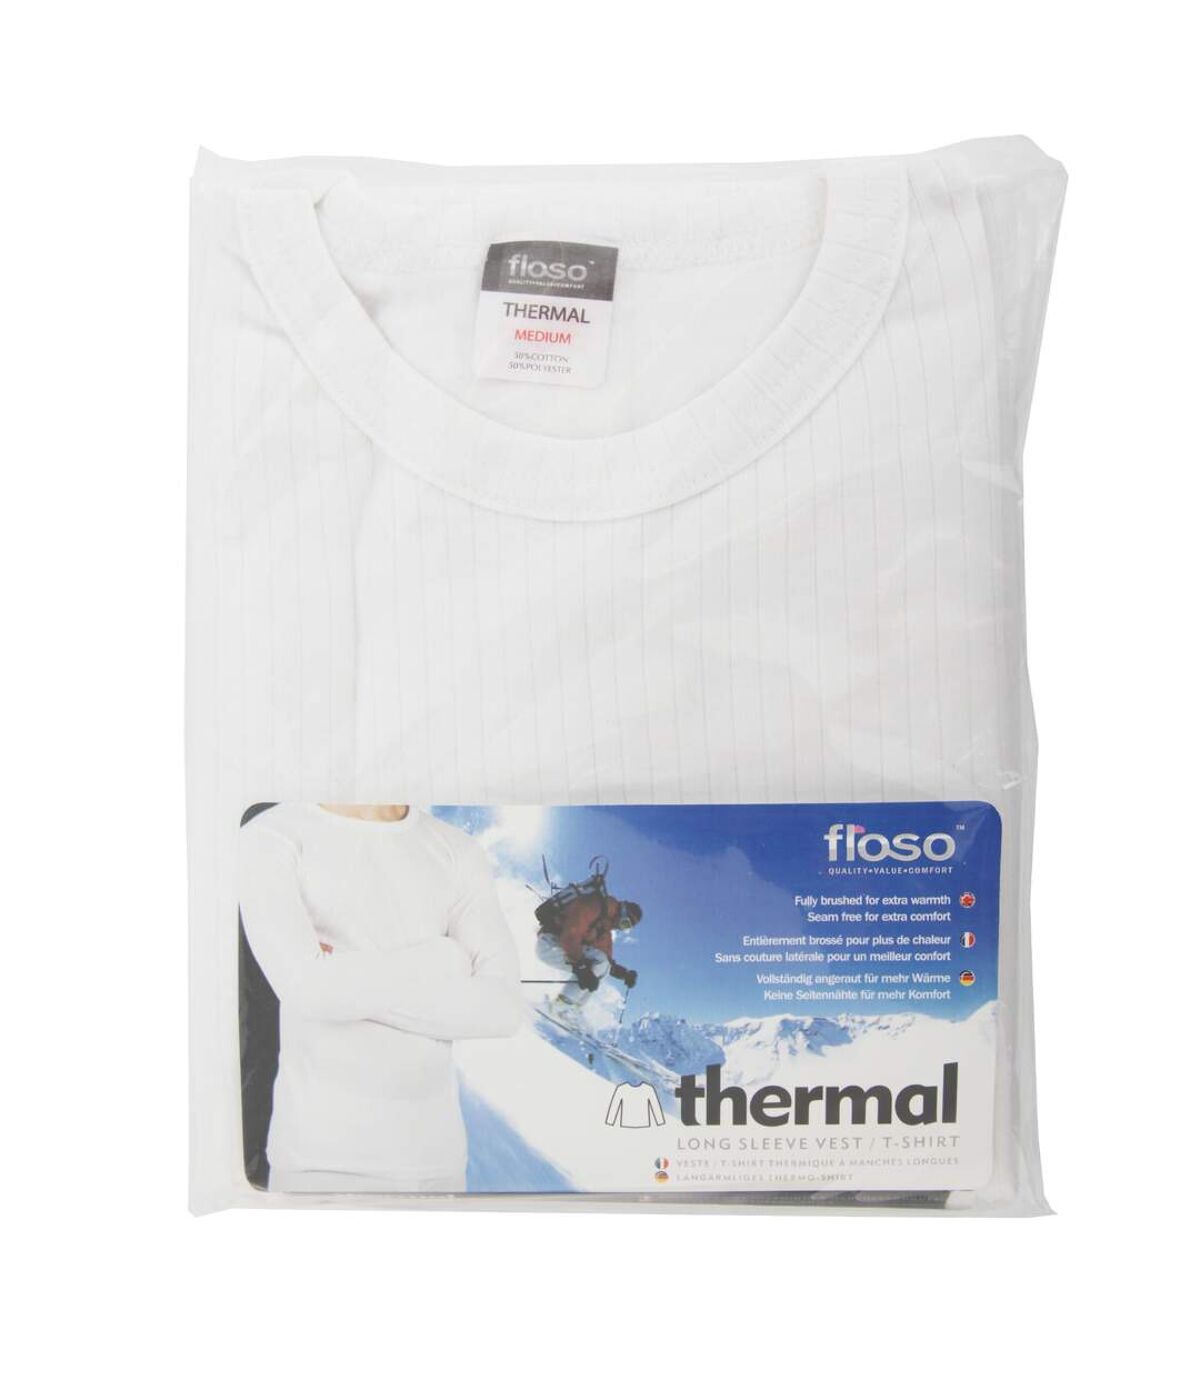 FLOSO - T-shirt thermique à manches longues - Homme (Blanc) - UTTHERM22